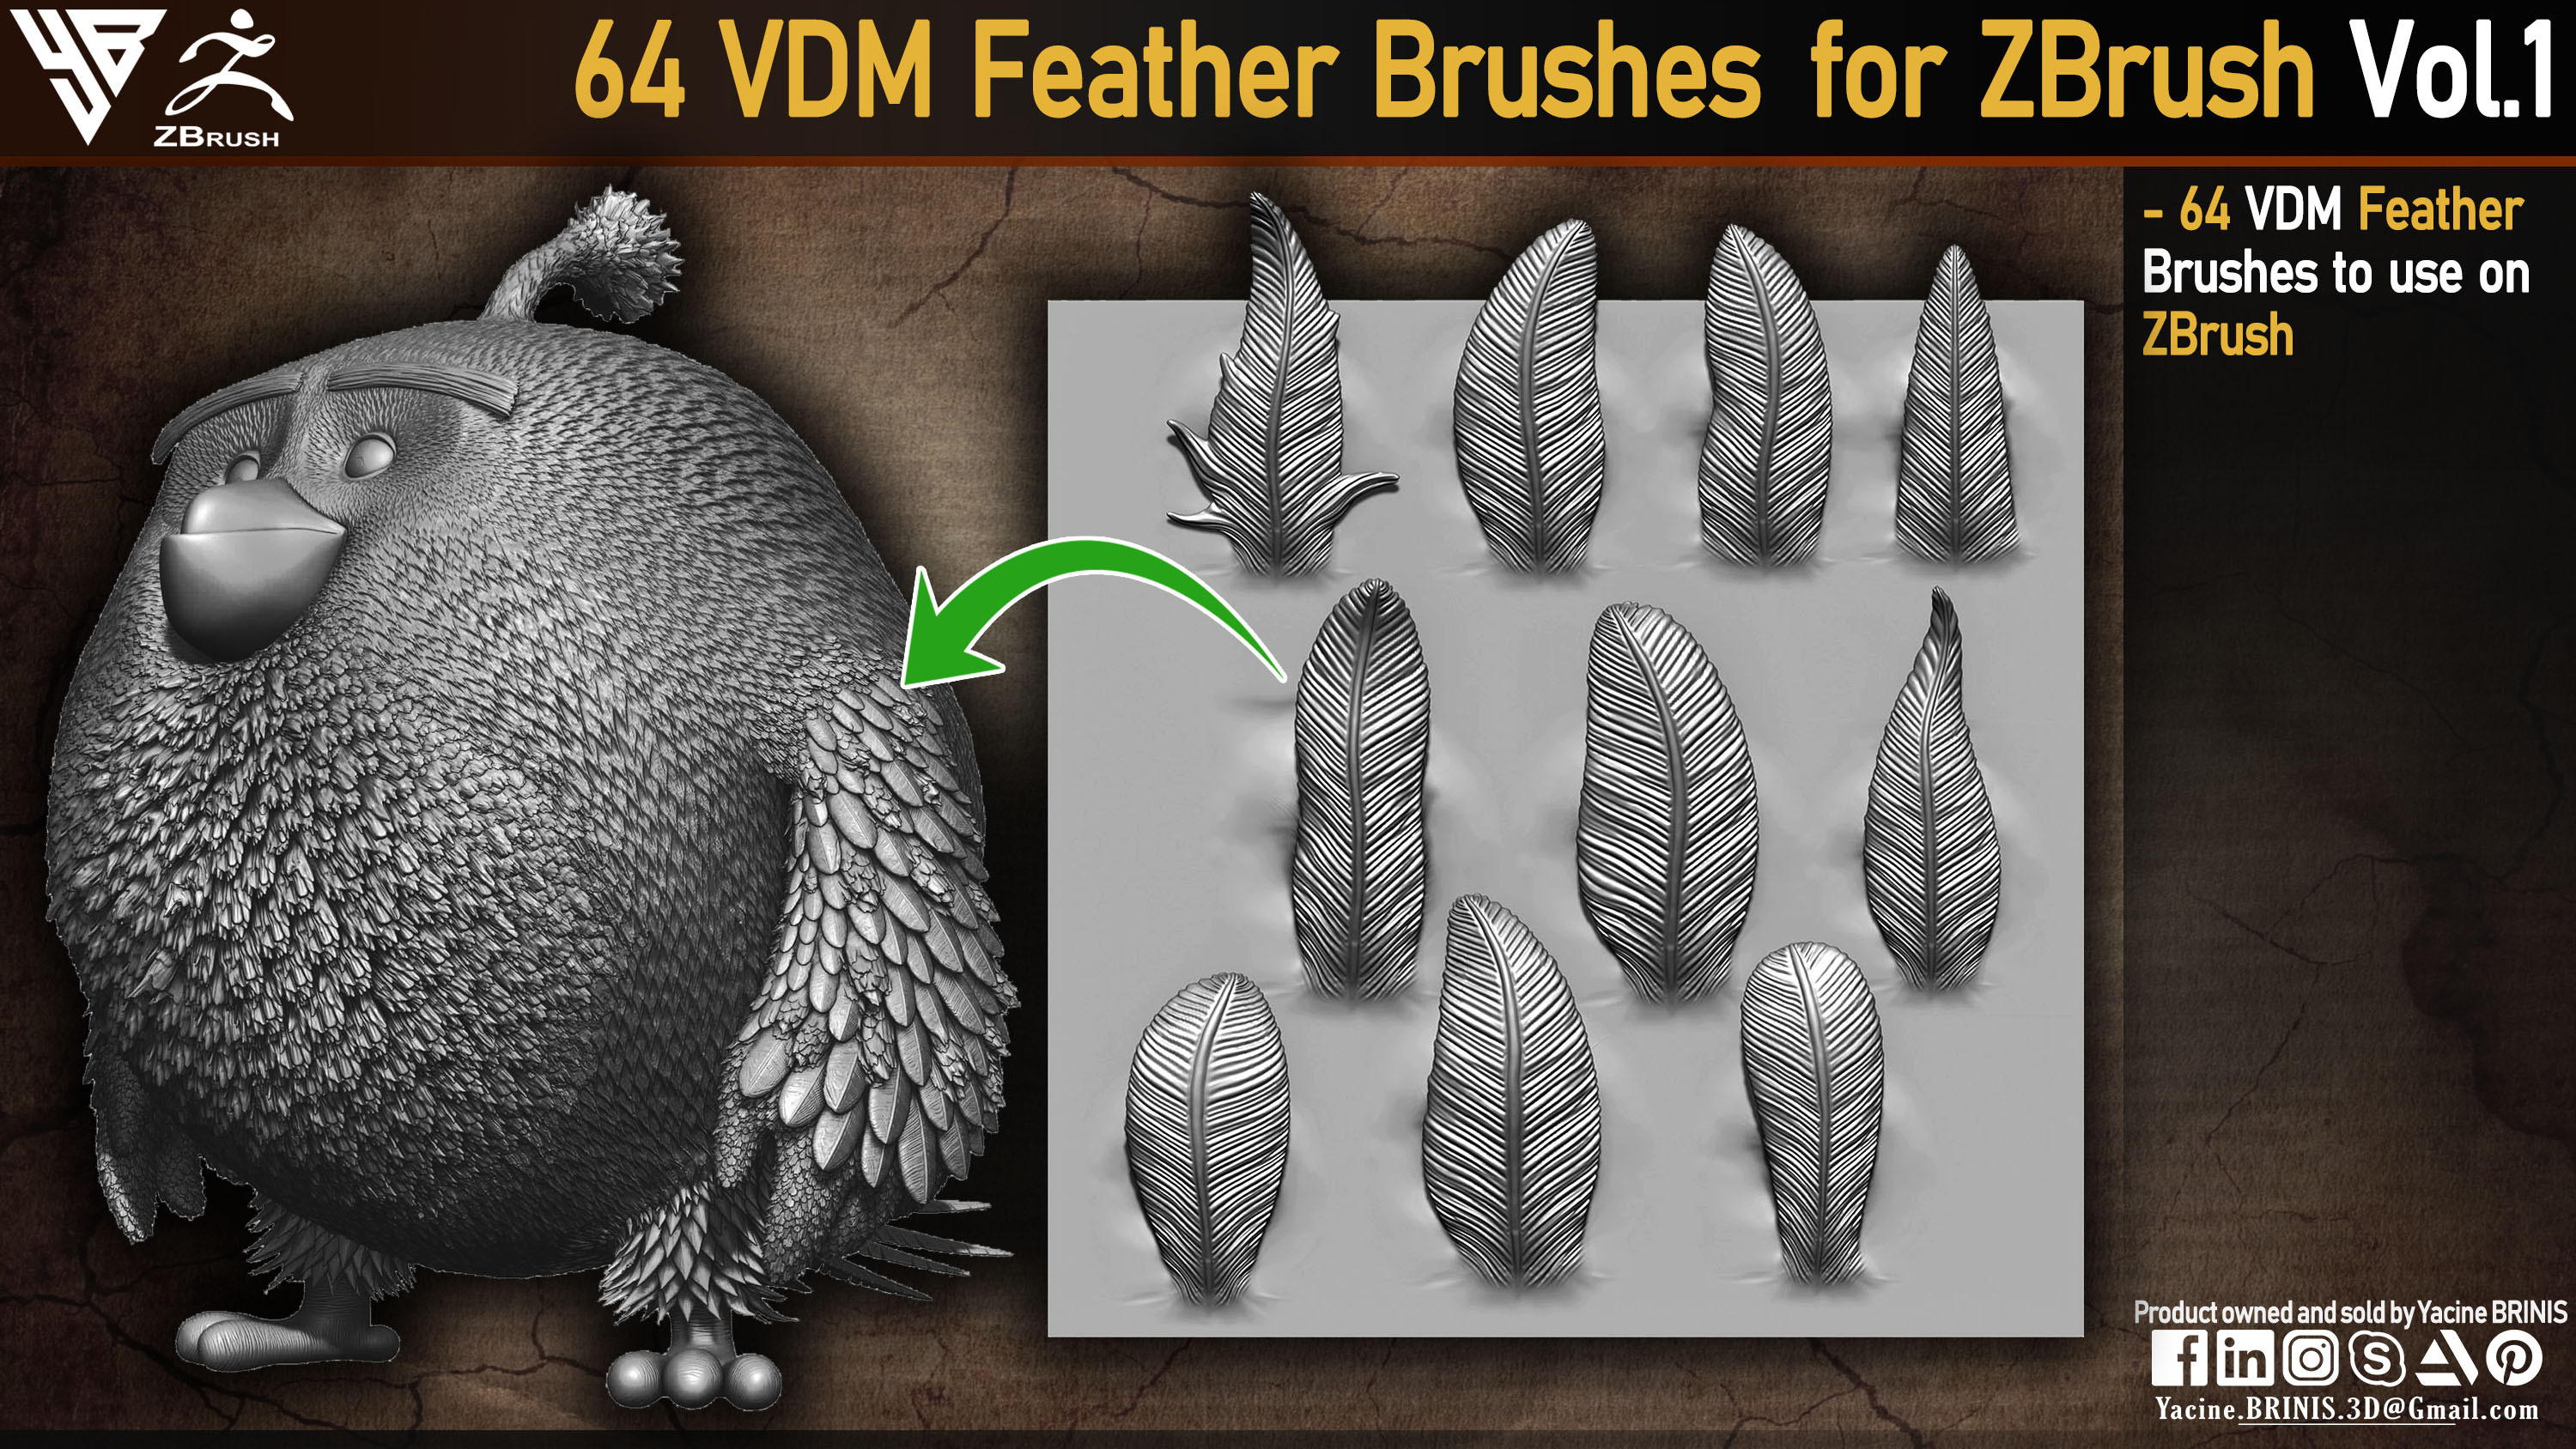 IMM Feather Brush (VDM) For ZBrush-Yacine BRINIS 001